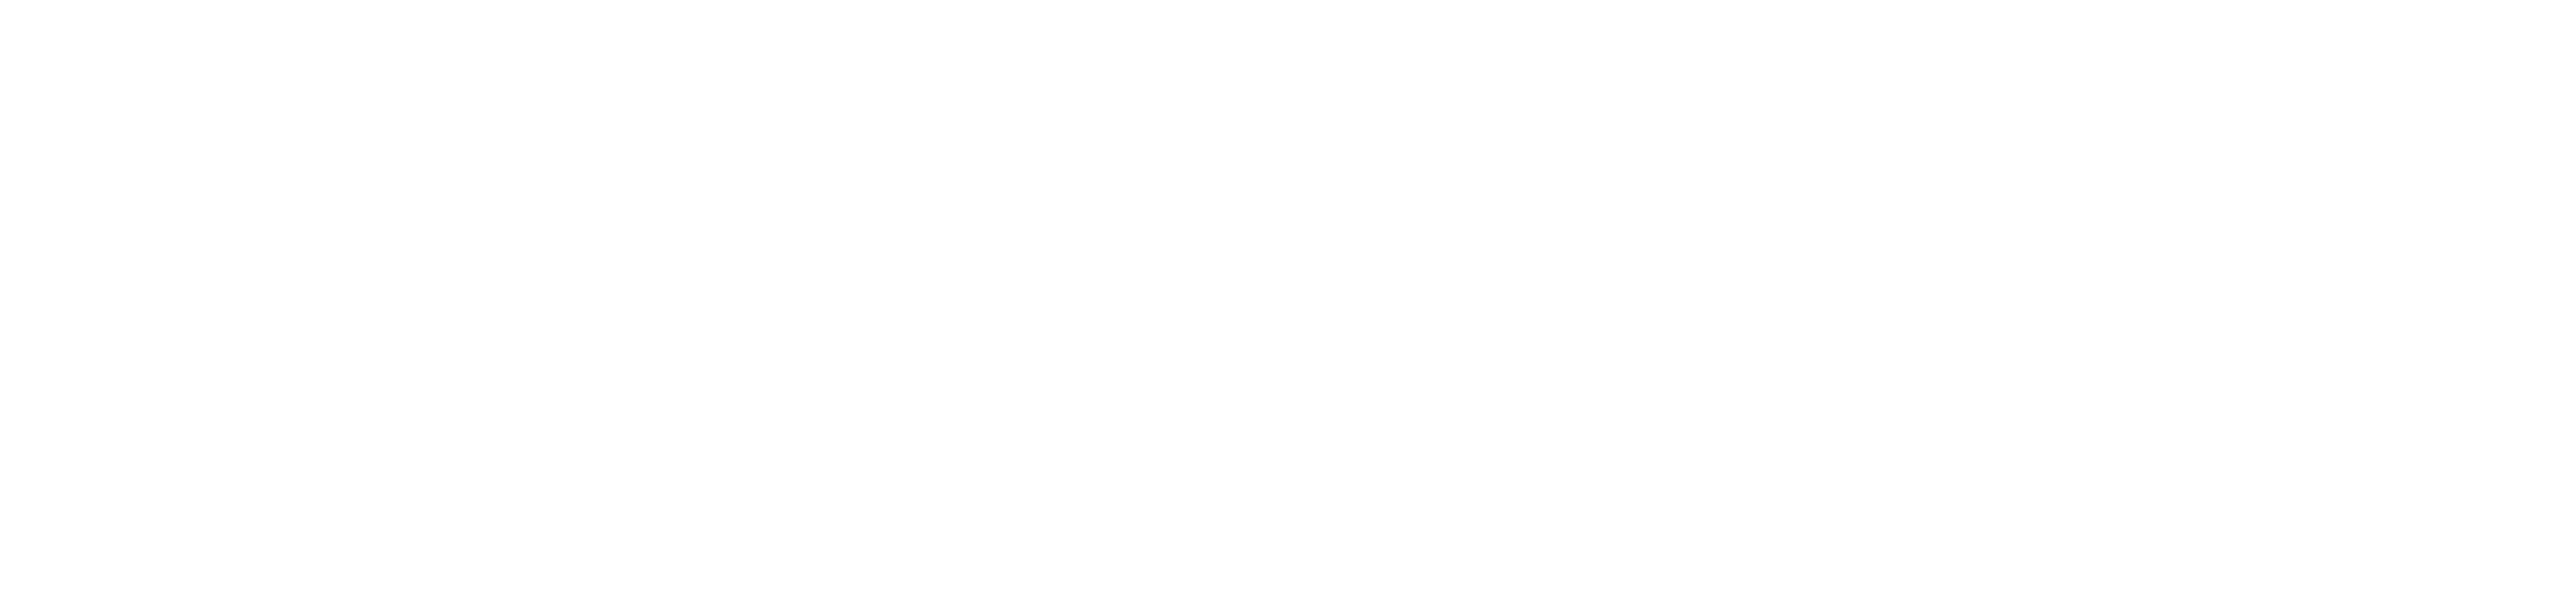 Logo ZYXEL